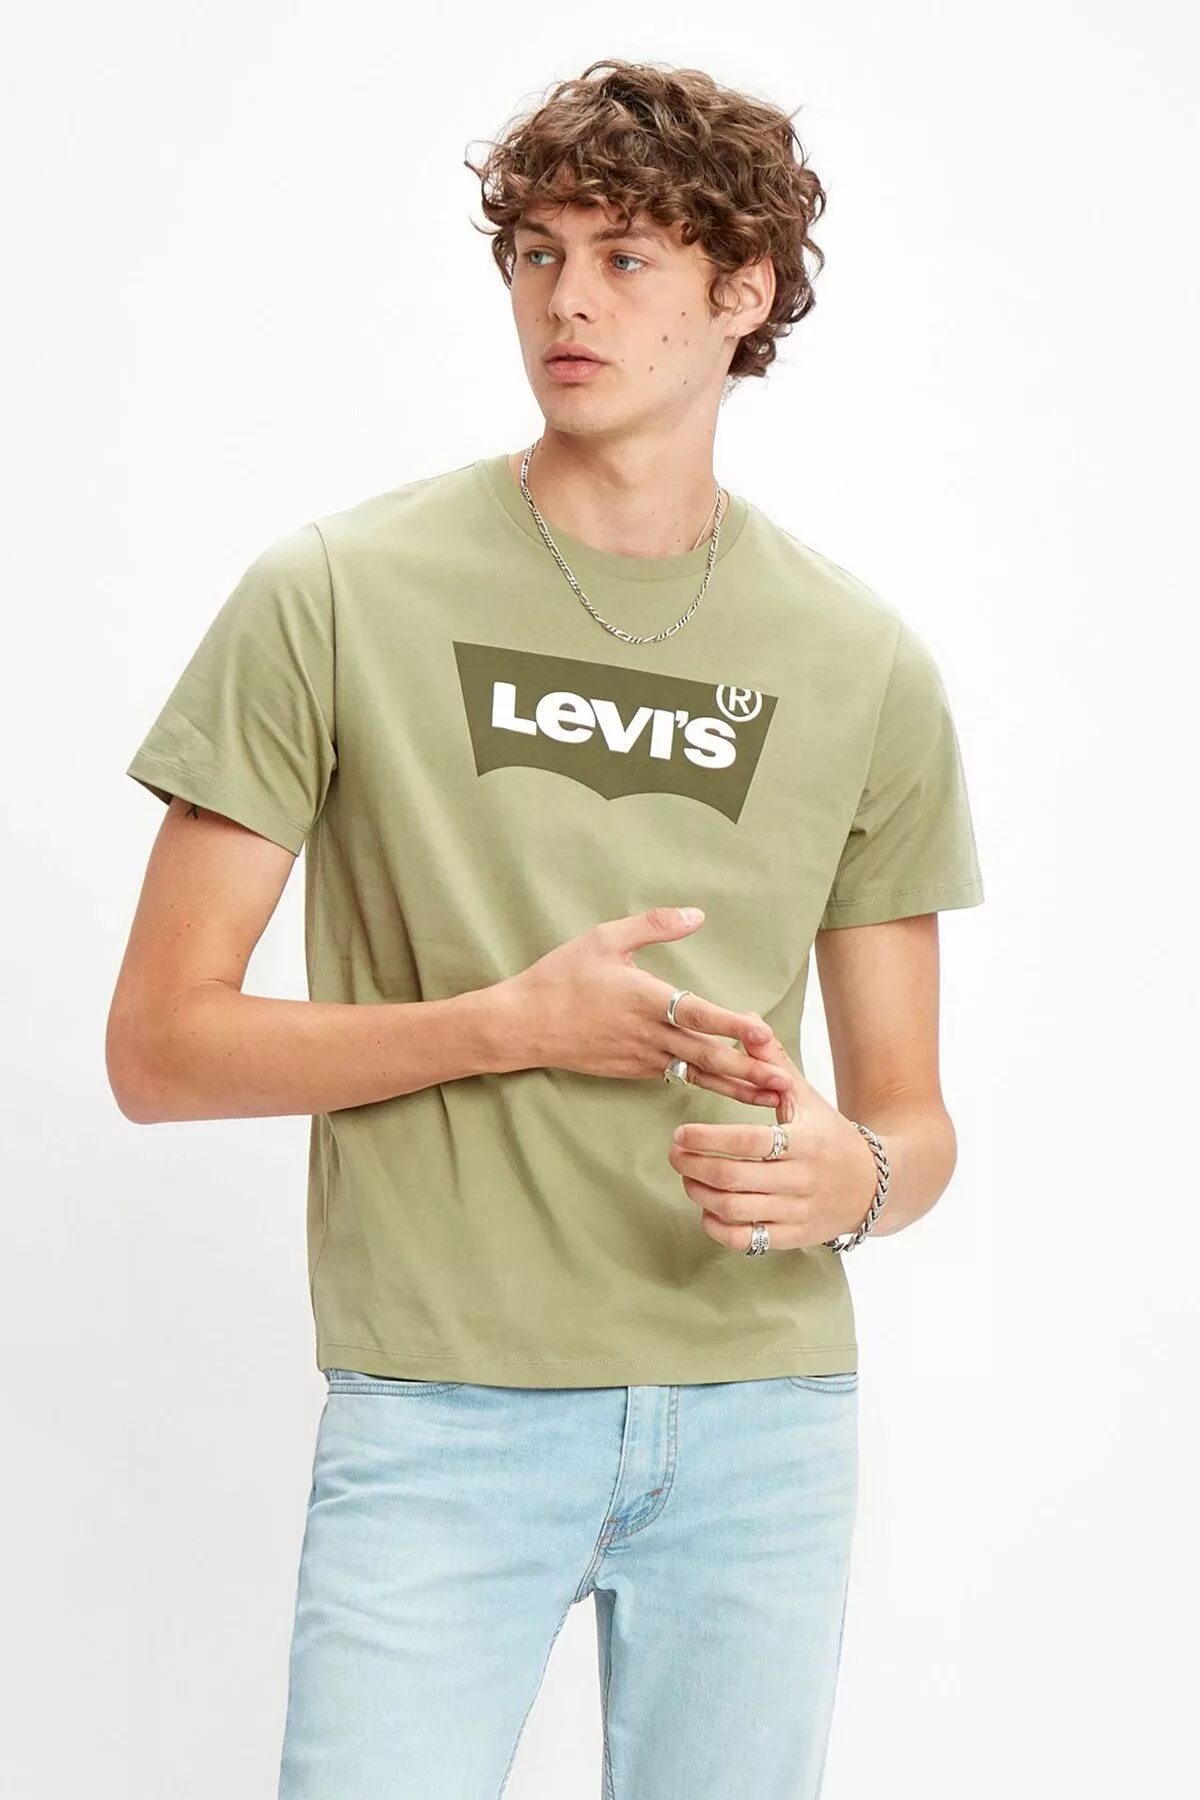 Футболка Levis мужская хаки. Левис футболки Левис. Майка левайс мужские. Футболка левайс зеленая.